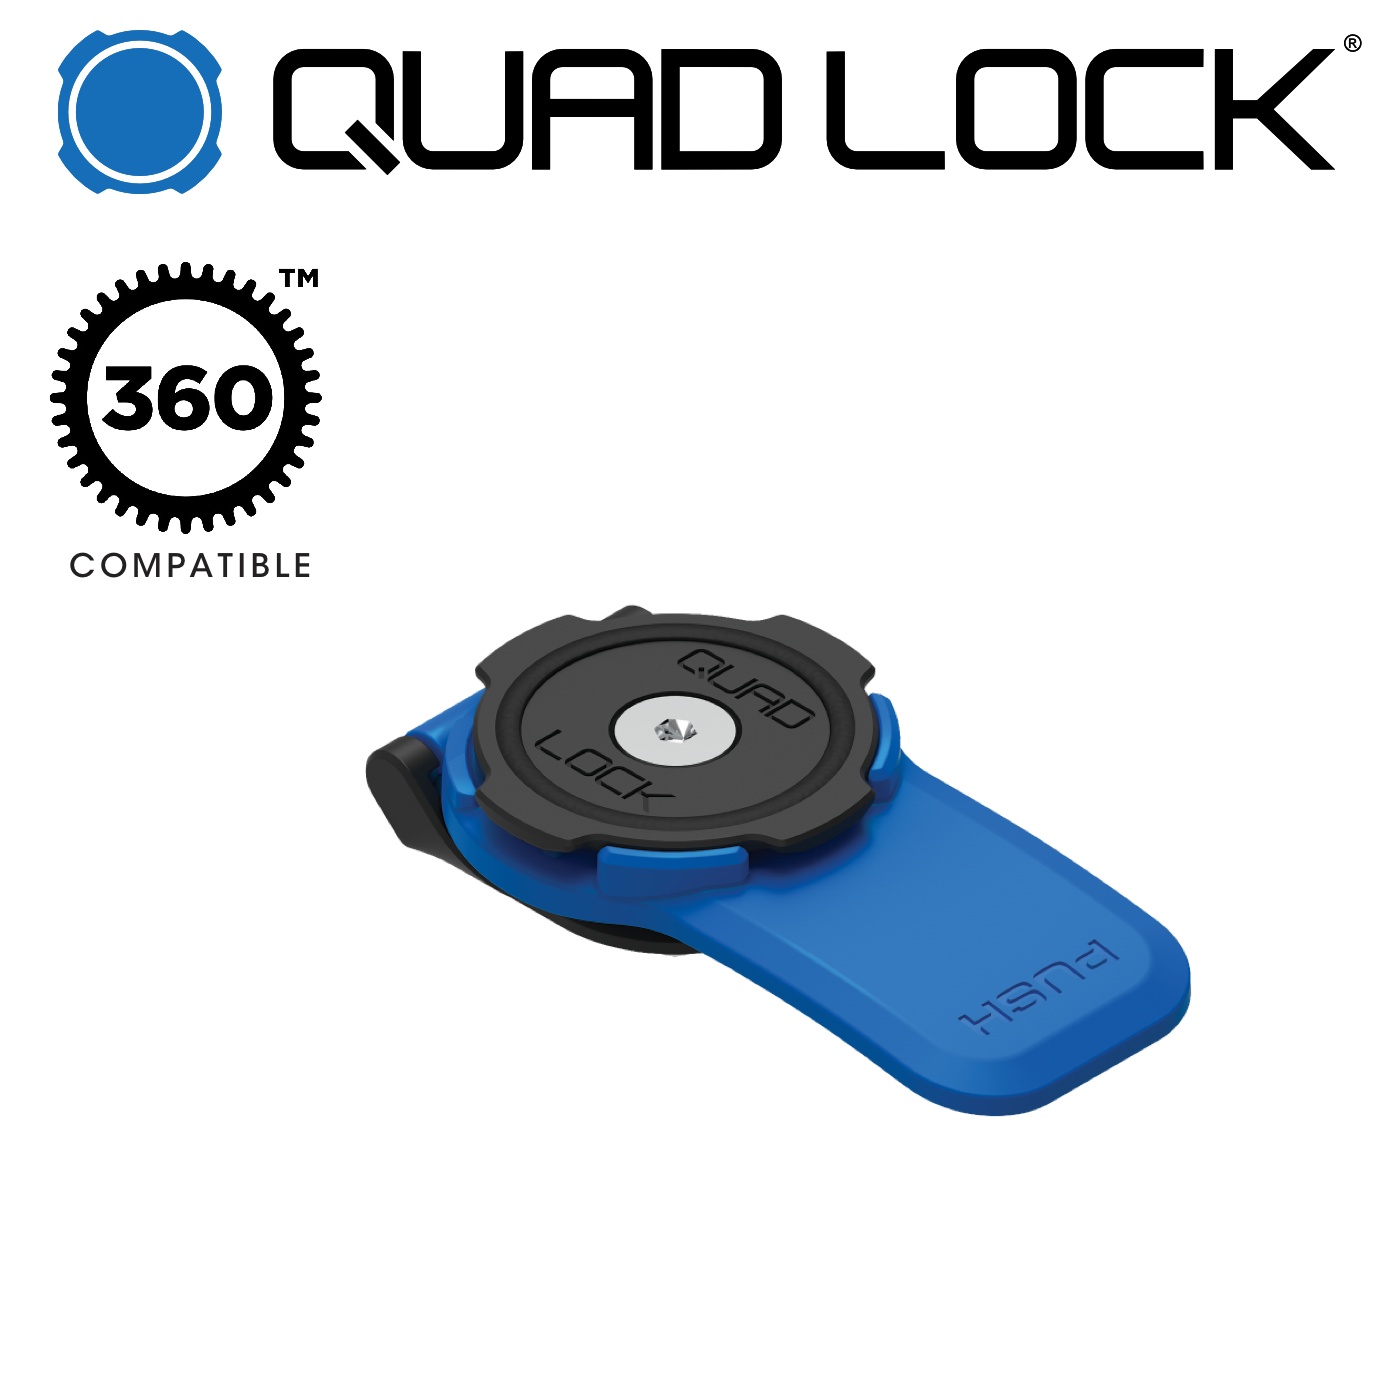 Quad Lock 360 Head - Lever